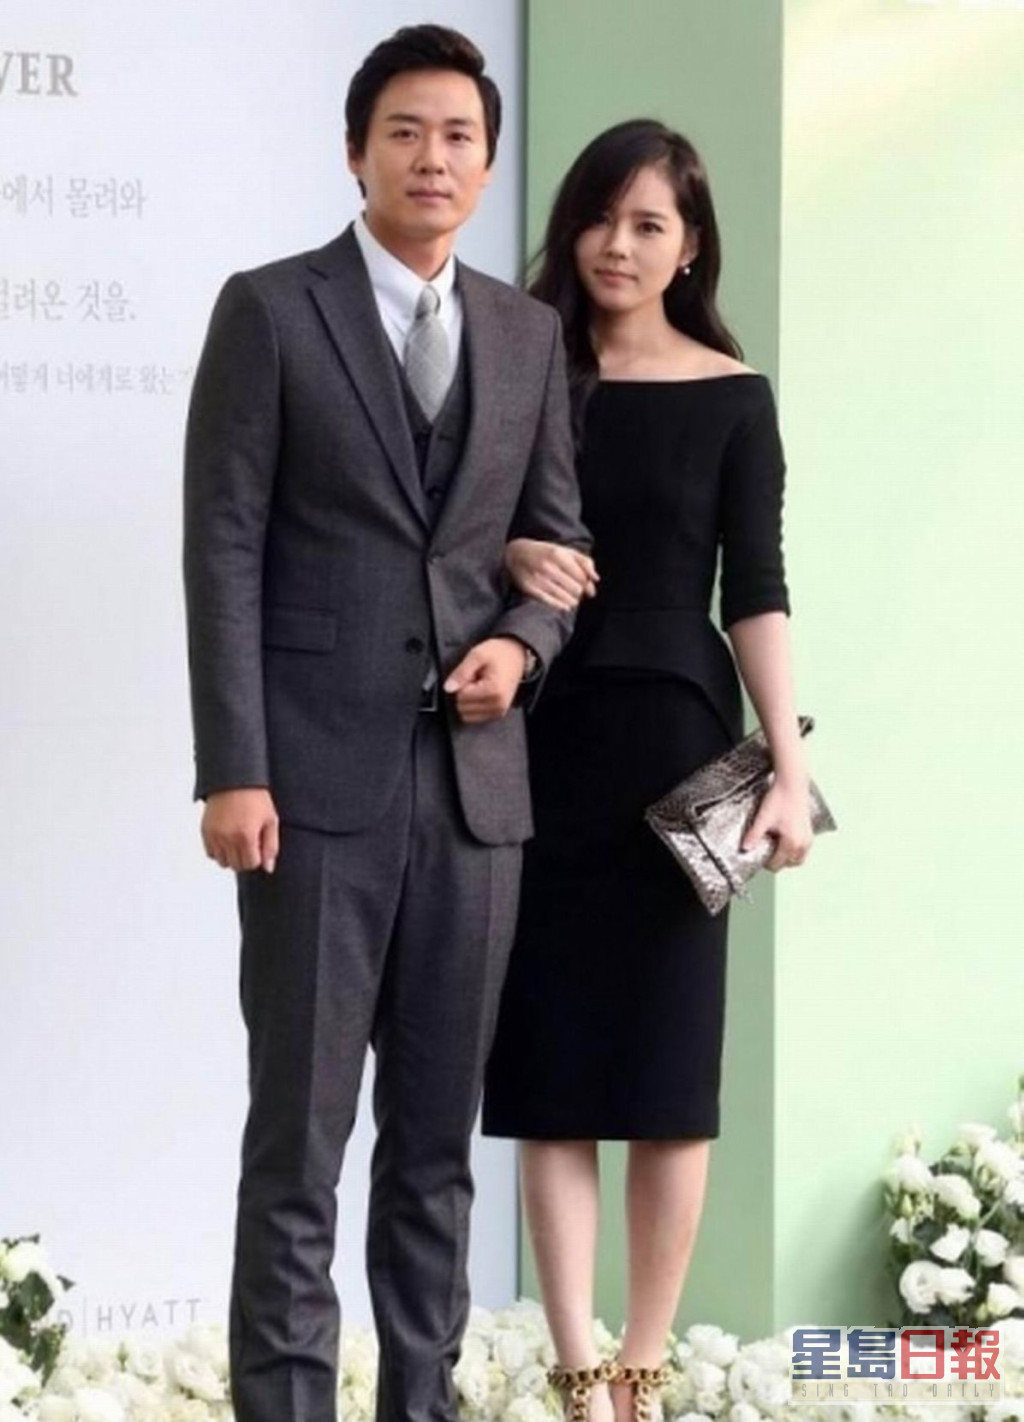 延政勳與韓佳人是韓國演藝界恩愛夫妻典範。